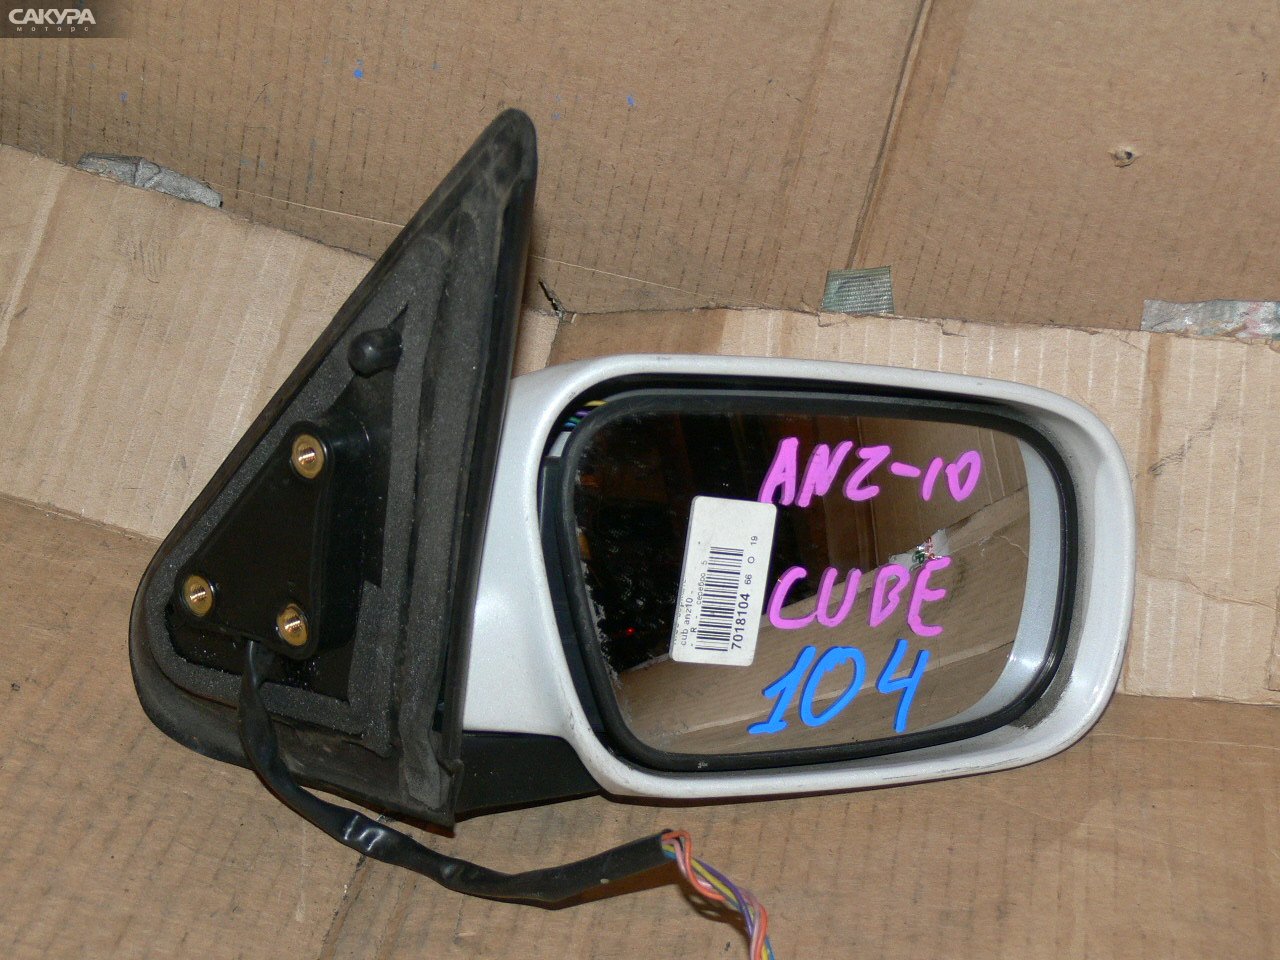 Зеркало боковое правое Nissan Cube ANZ10: купить в Сакура Иркутск.